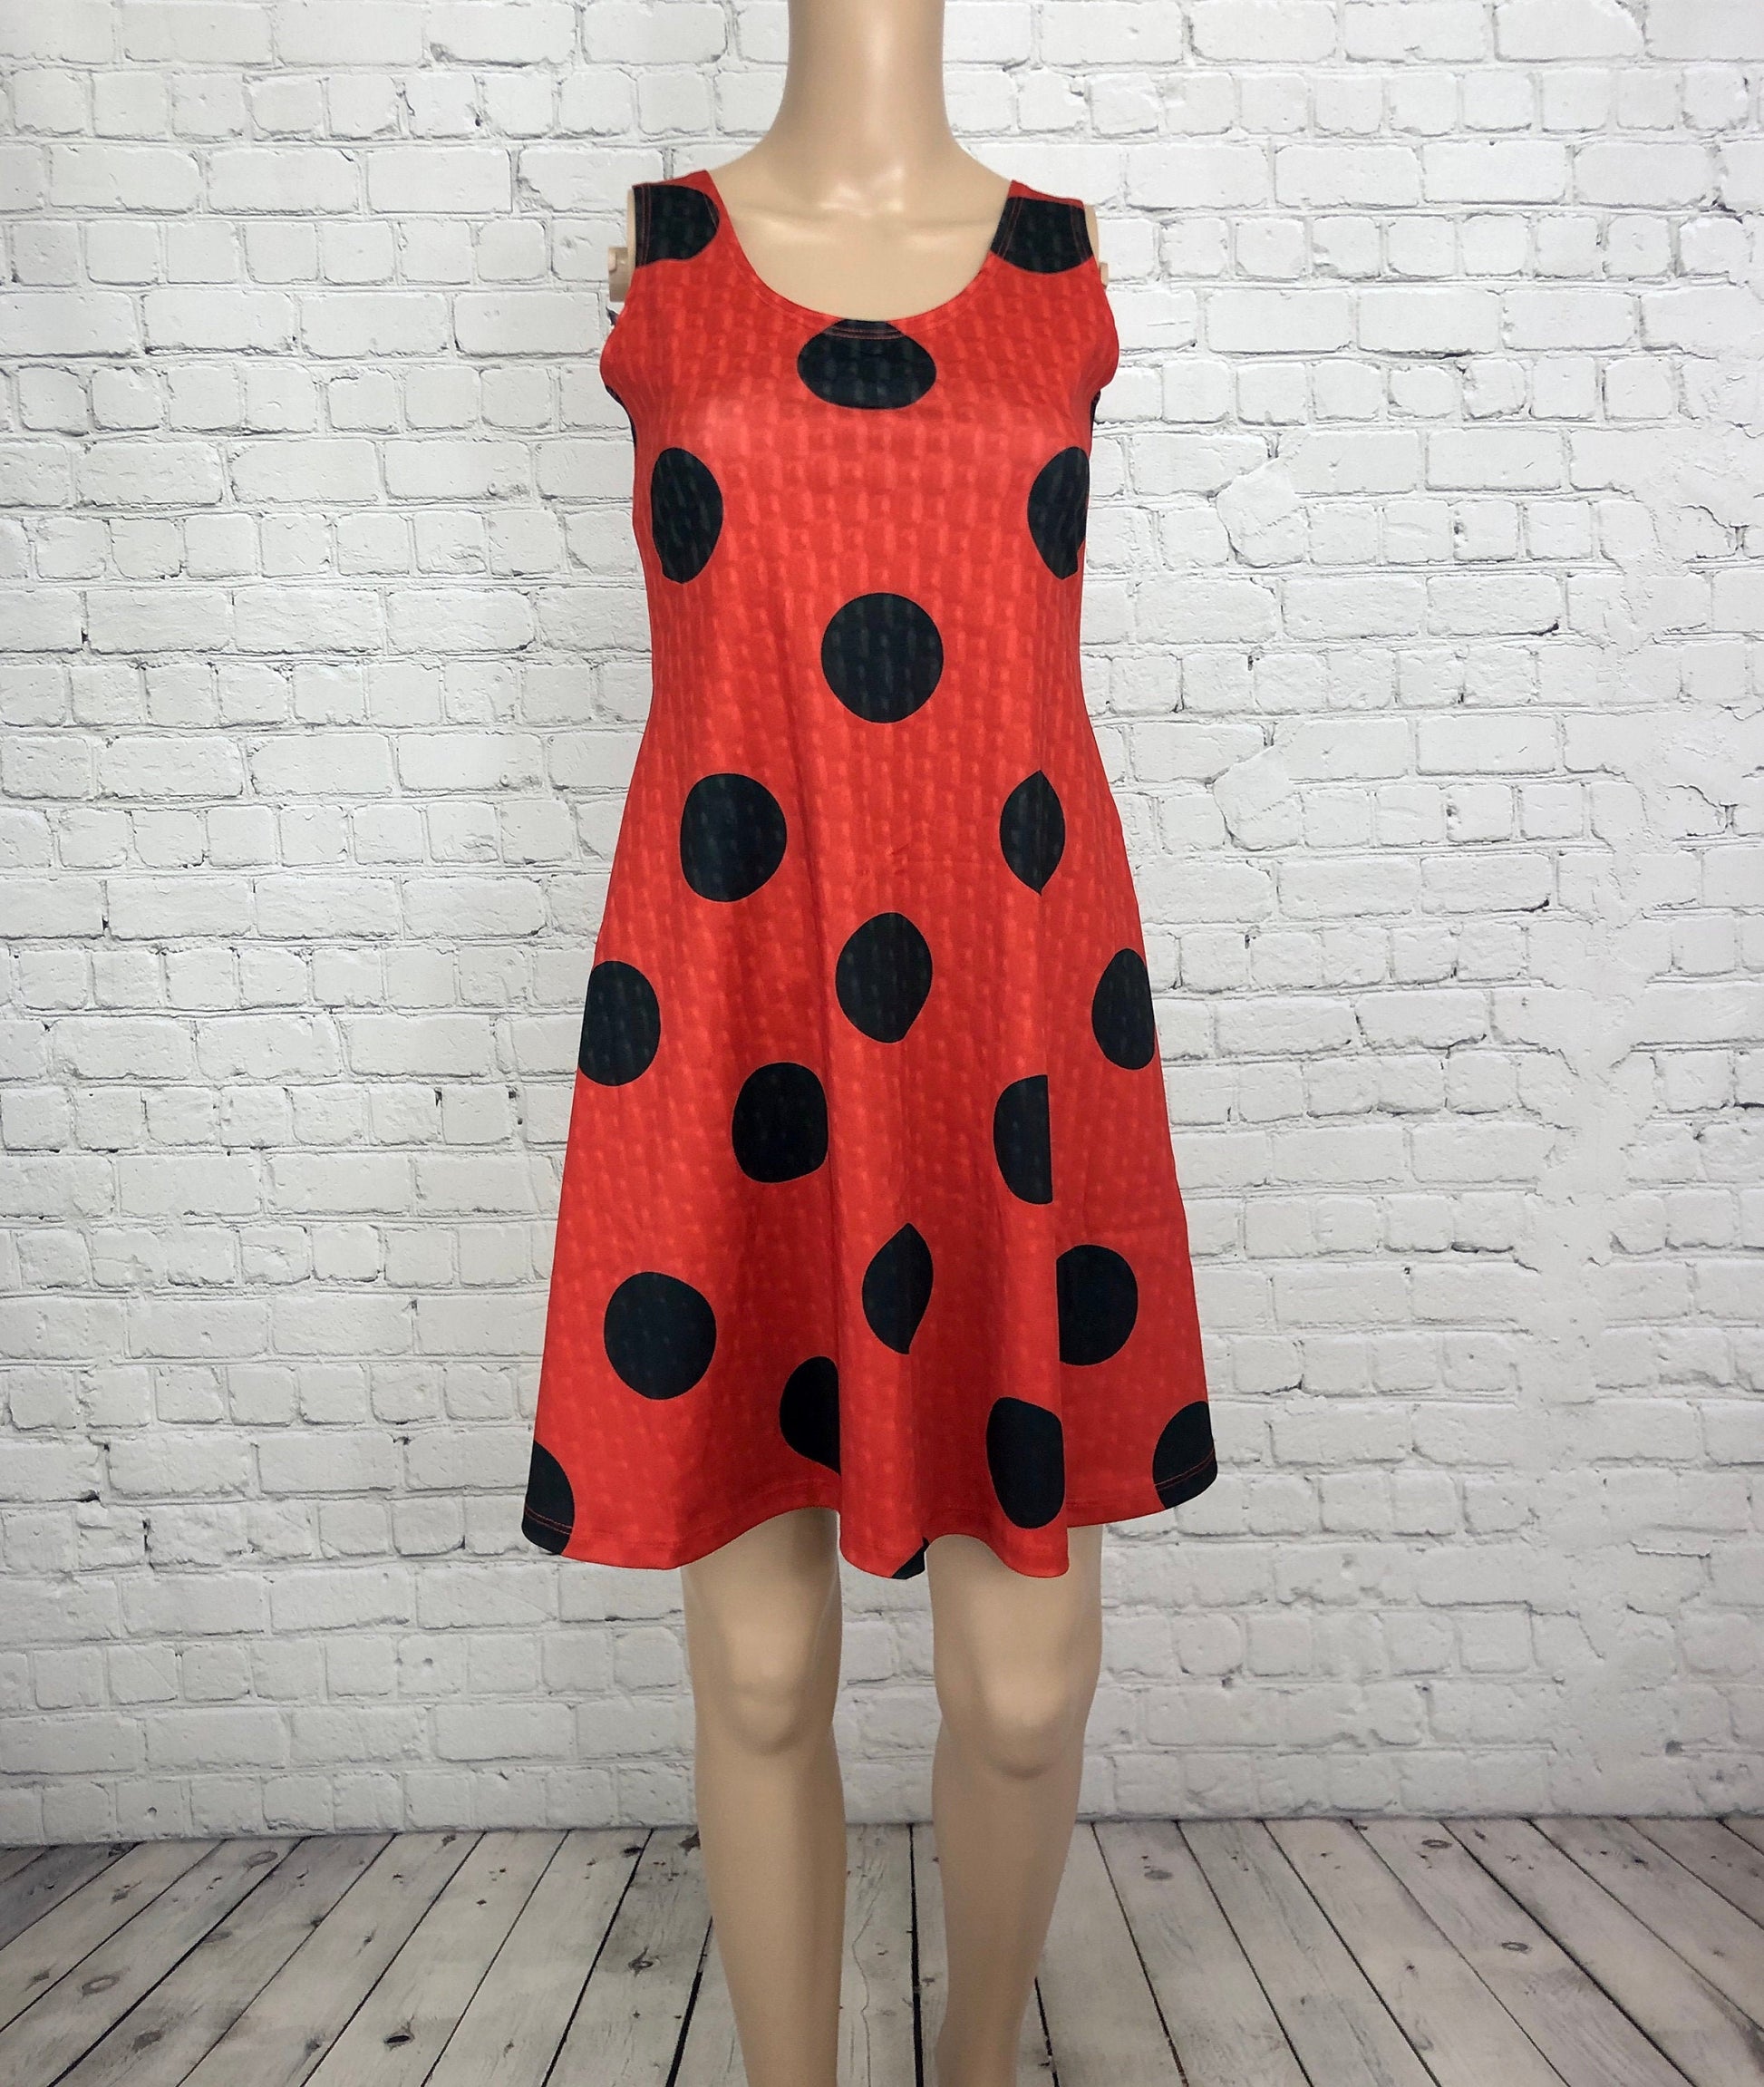 Miraculous Ladybug Inspired Sleeveless Dress